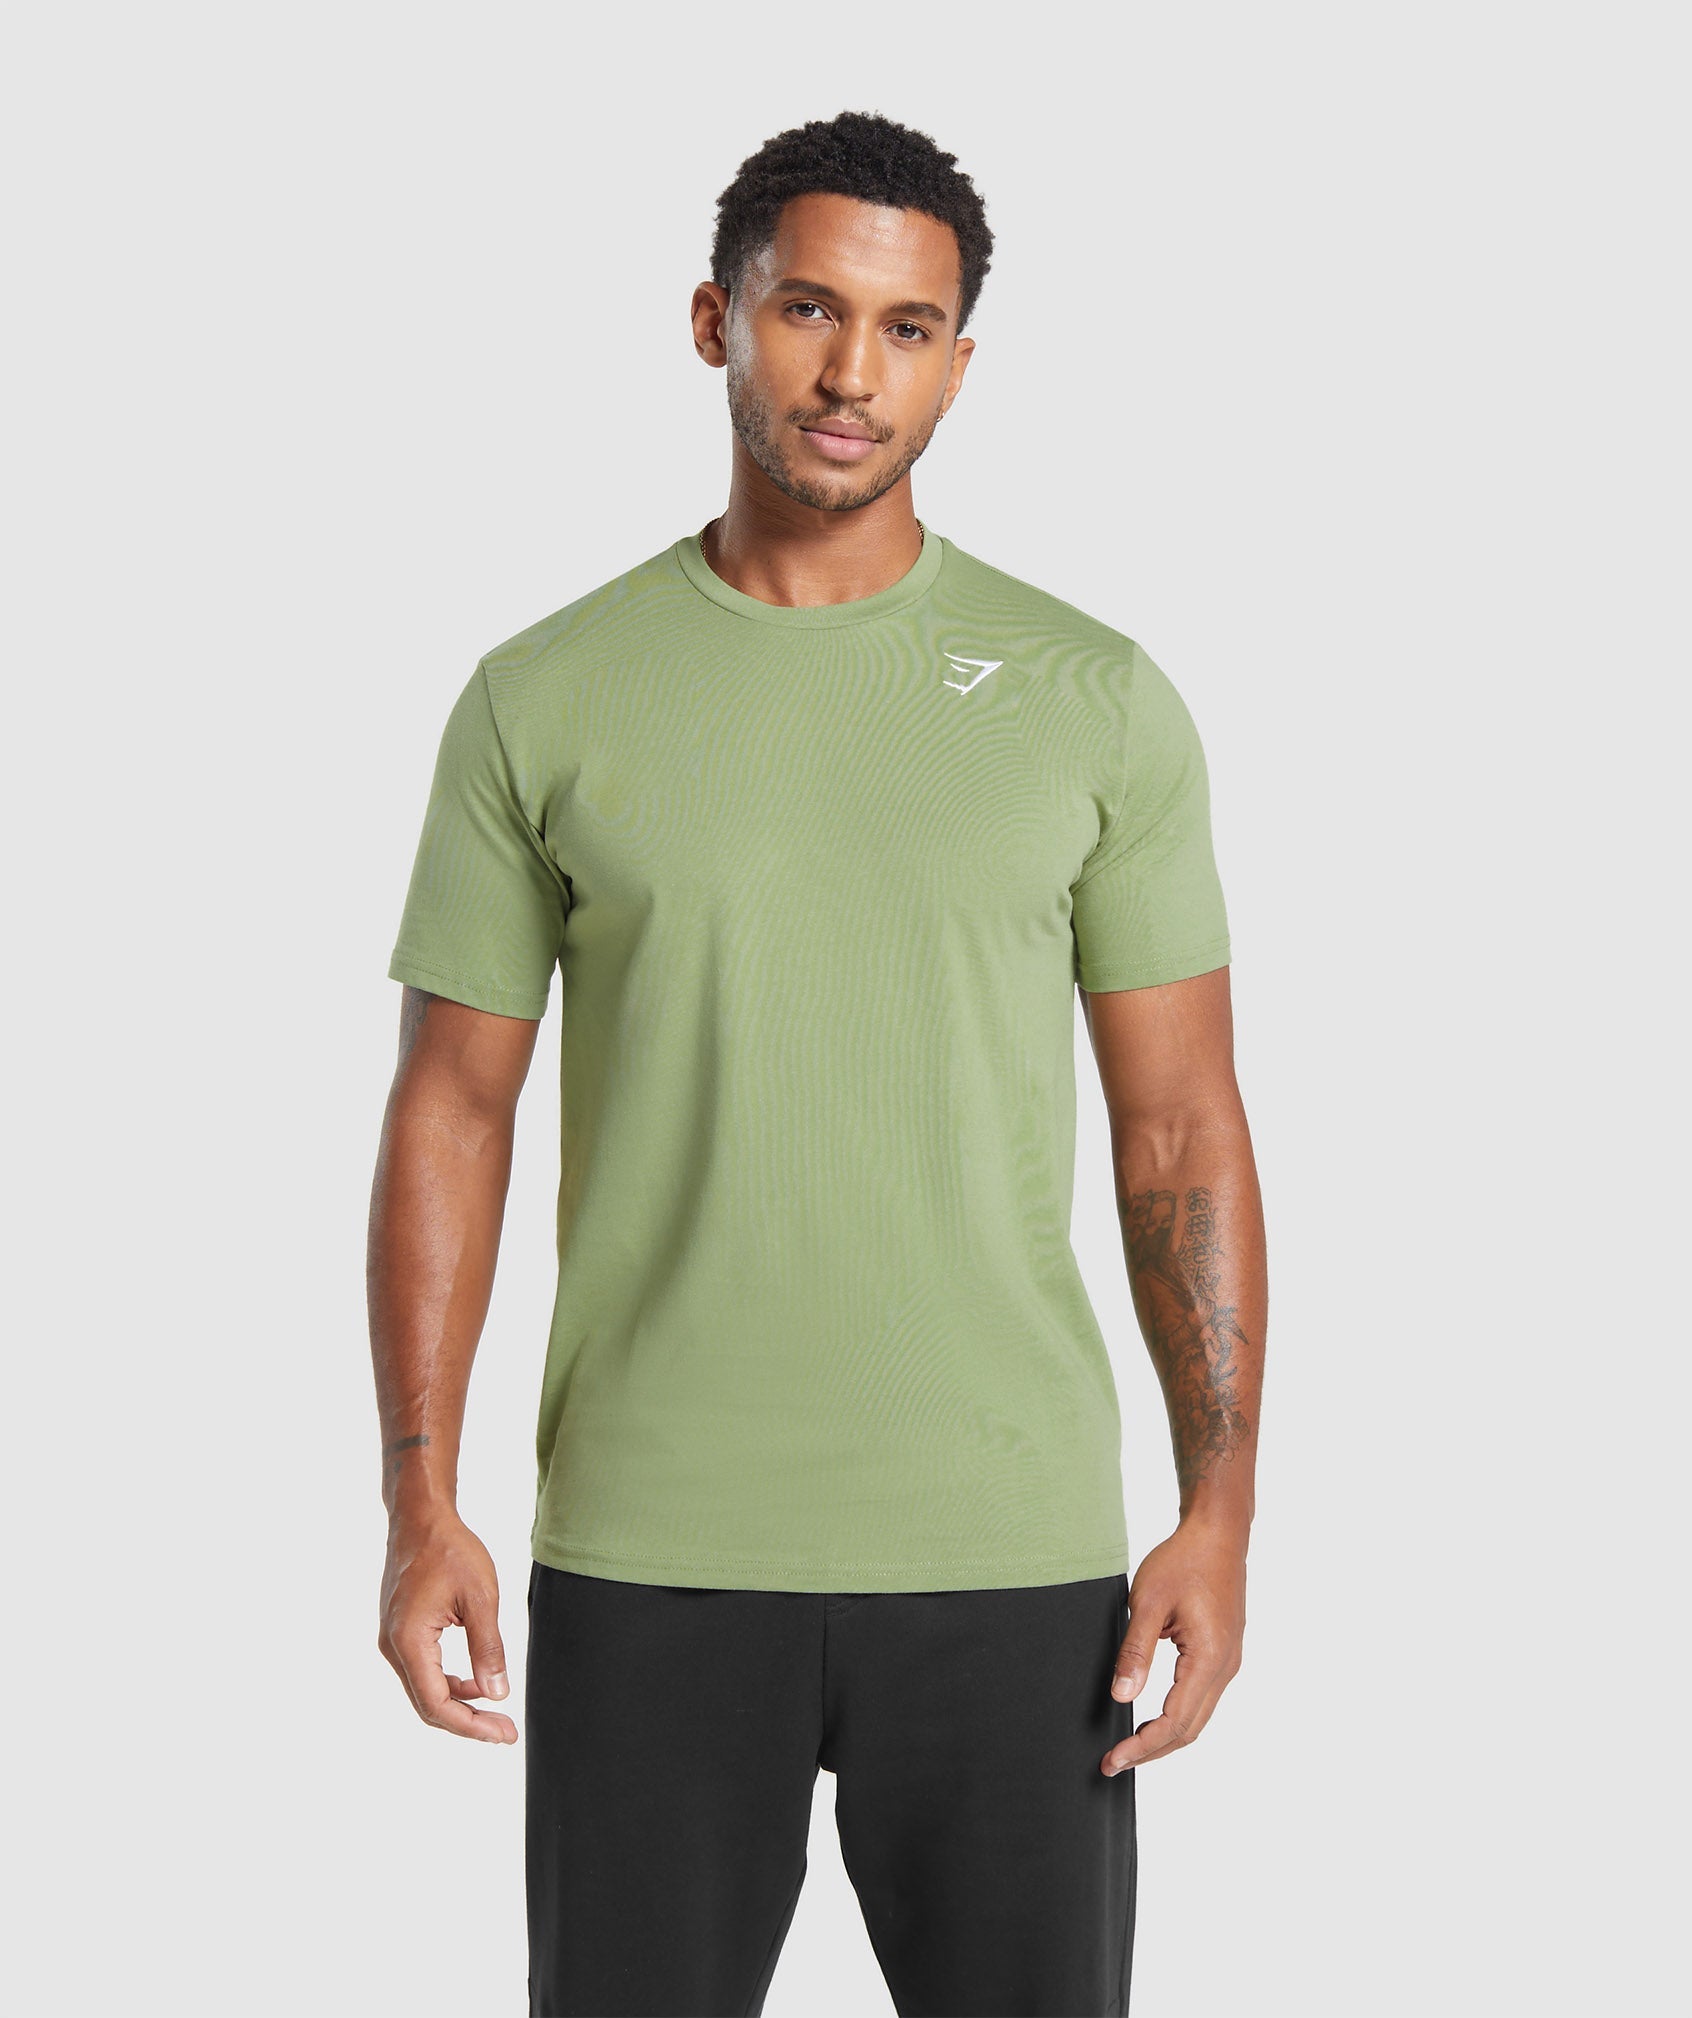 Gymshark Crest T-Shirt - Natural Sage Green